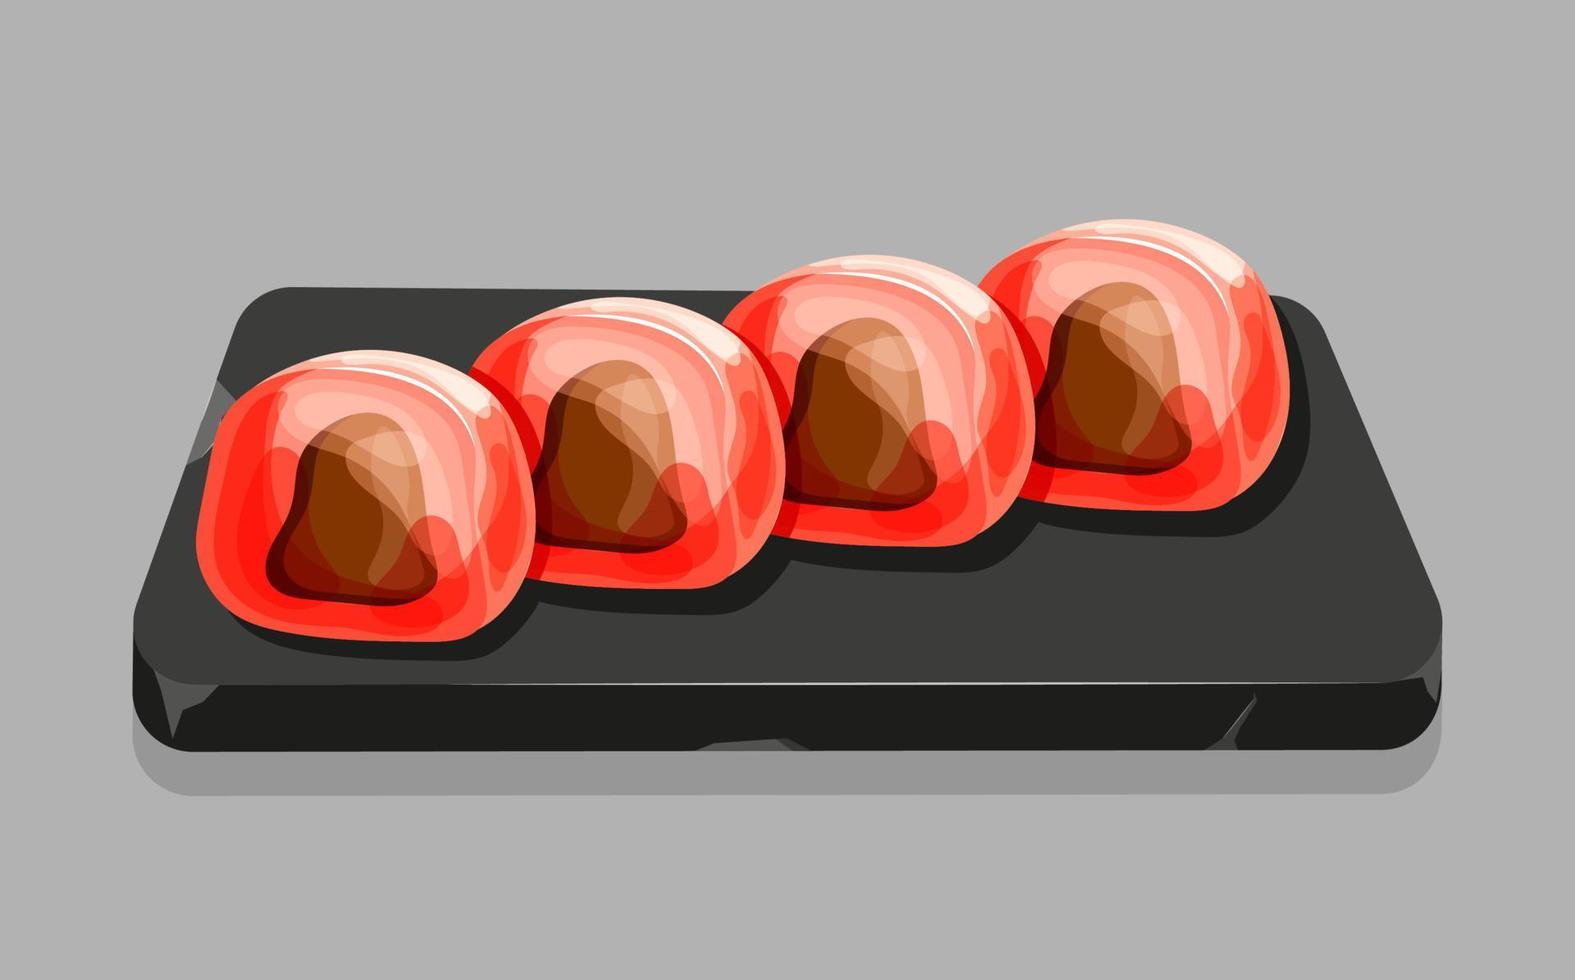 mochi de fresa de dibujos animados en la bandeja de piedra. deliciosos postres dulces japoneses con chocolate. ilustración vectorial vector